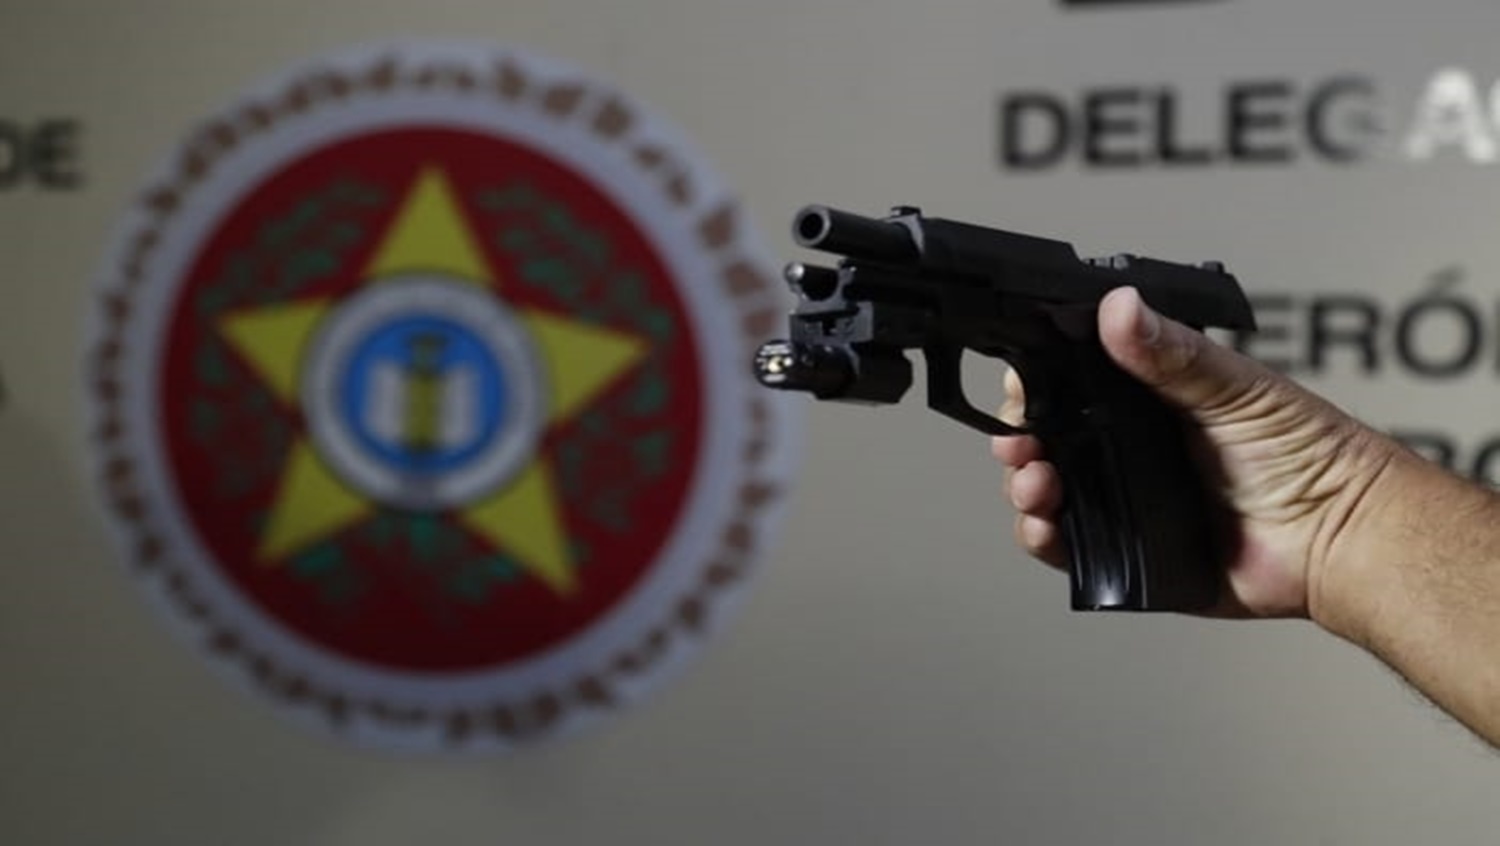 ESTUDOS: Maioria das armas usadas em crimes foi adquirida de forma legal